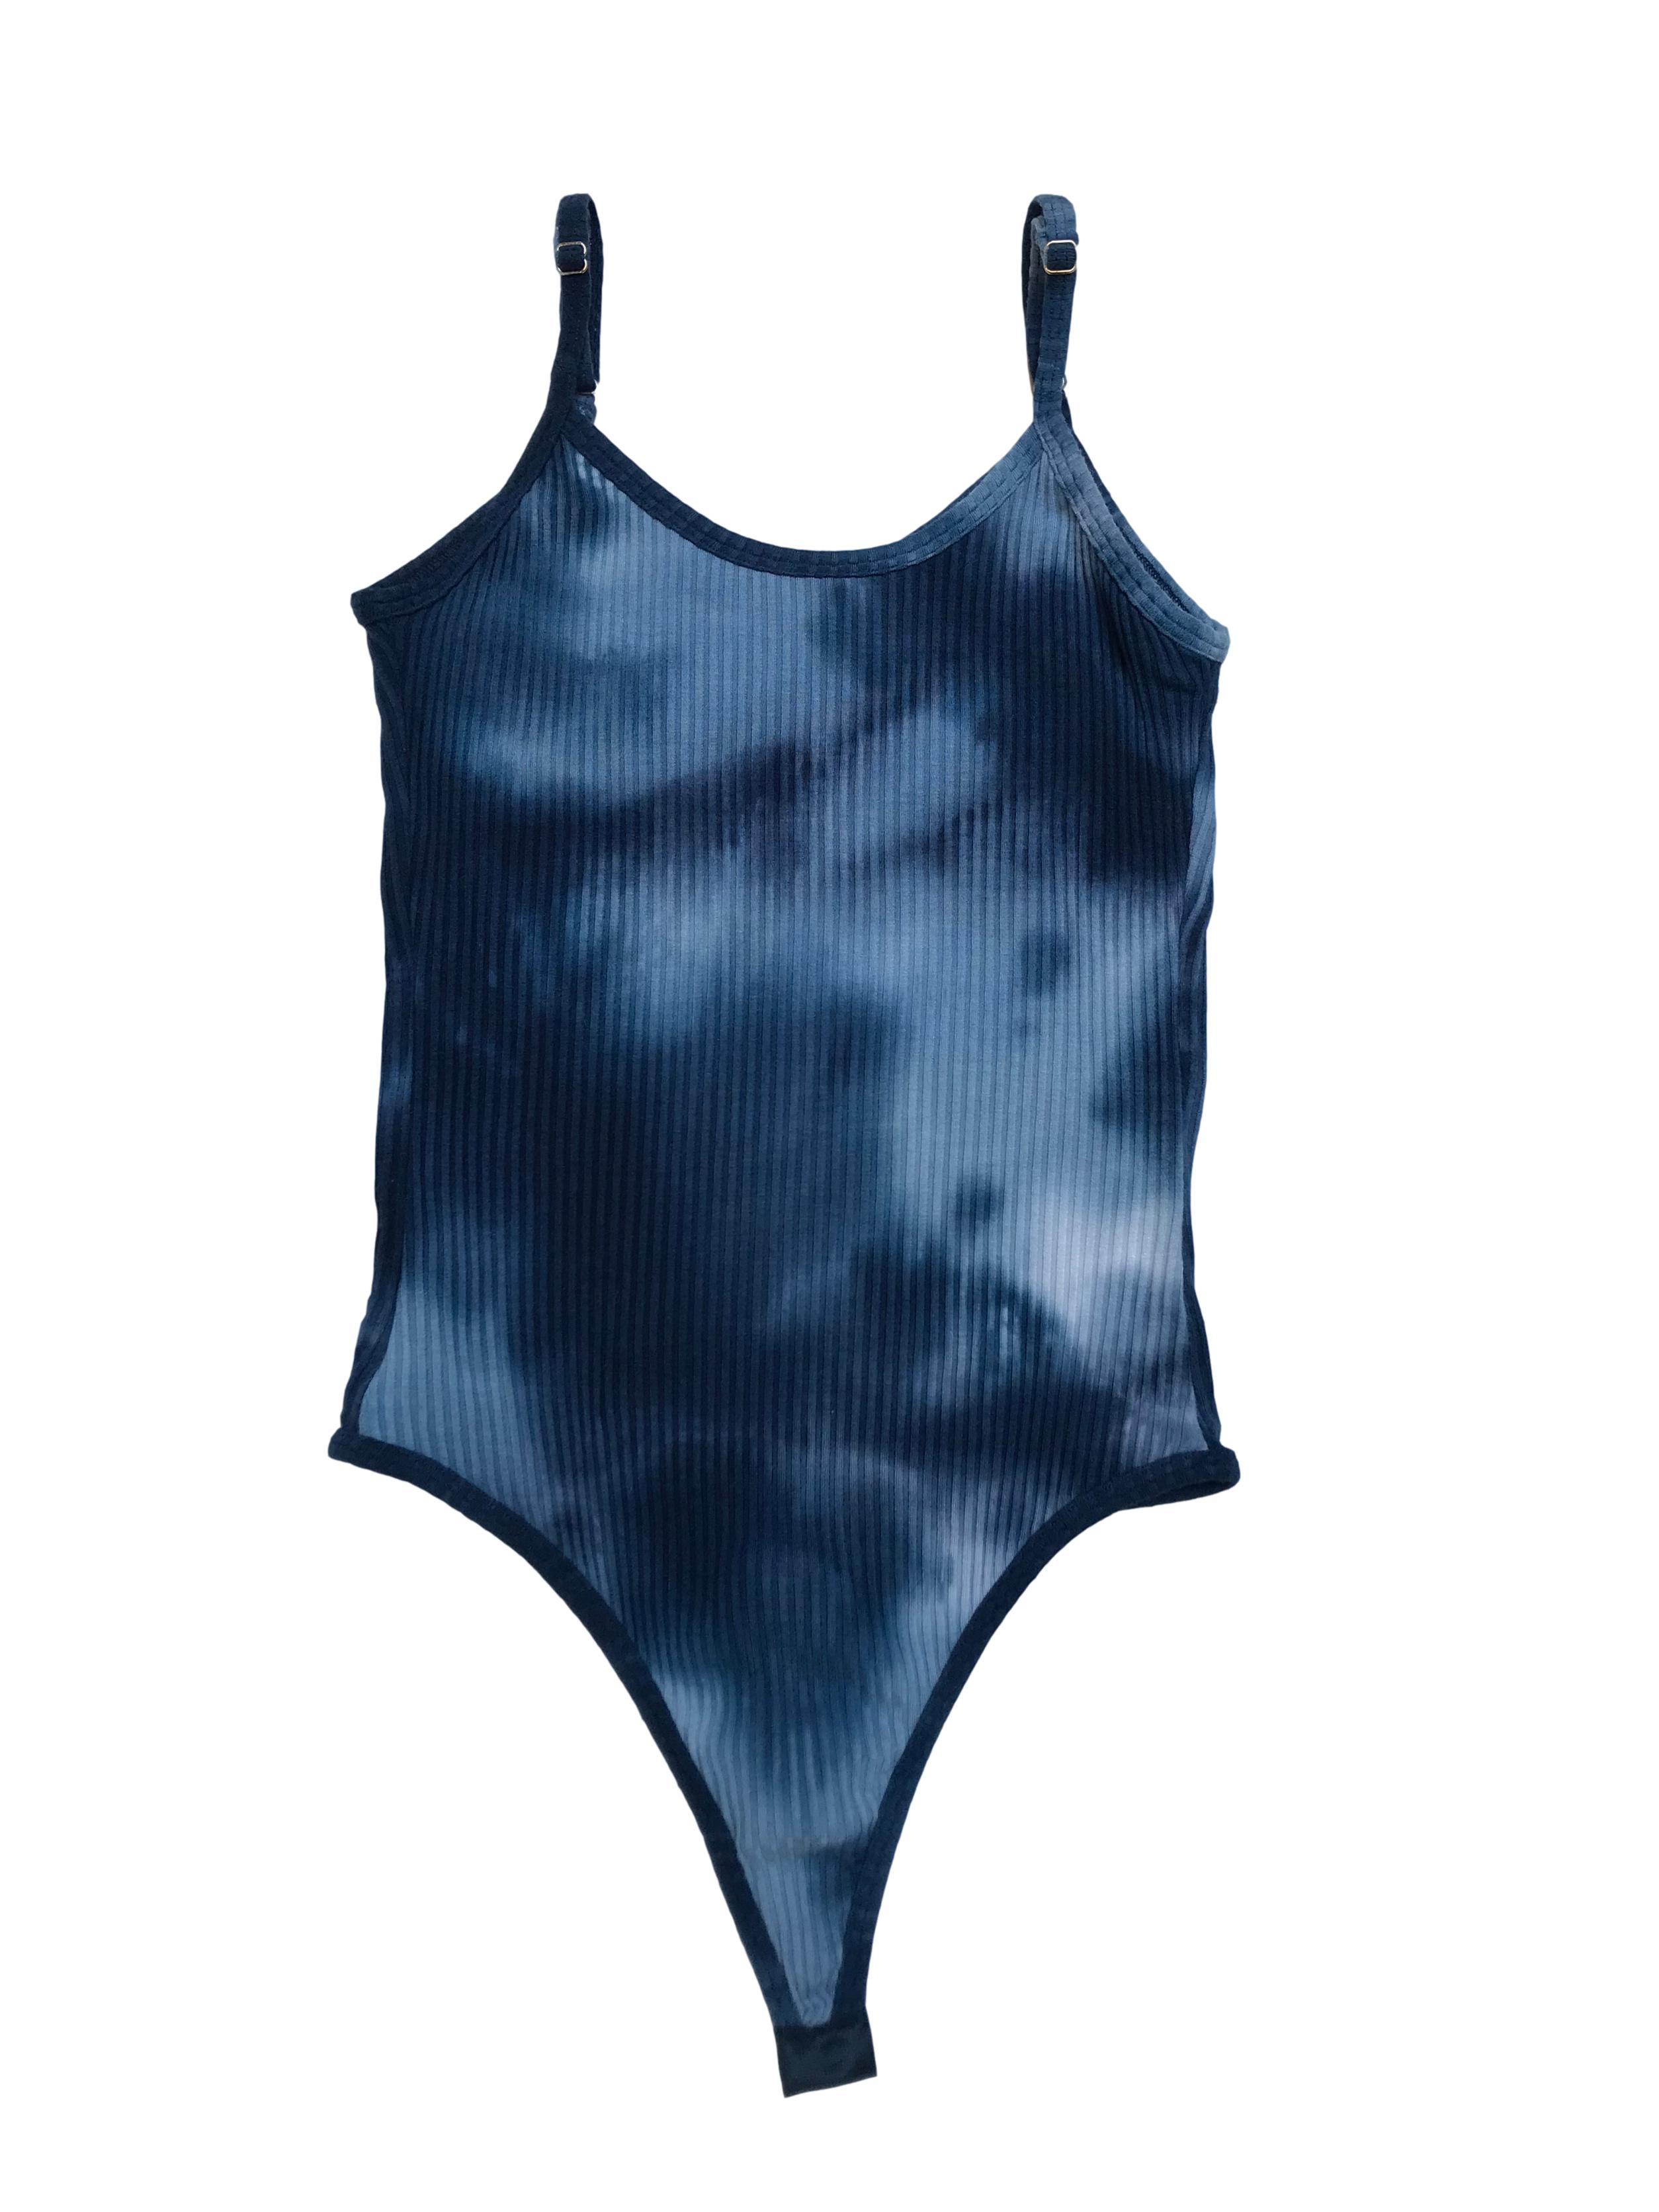 Body ADC tie dye azul, tela acanalada y tiras regulables.